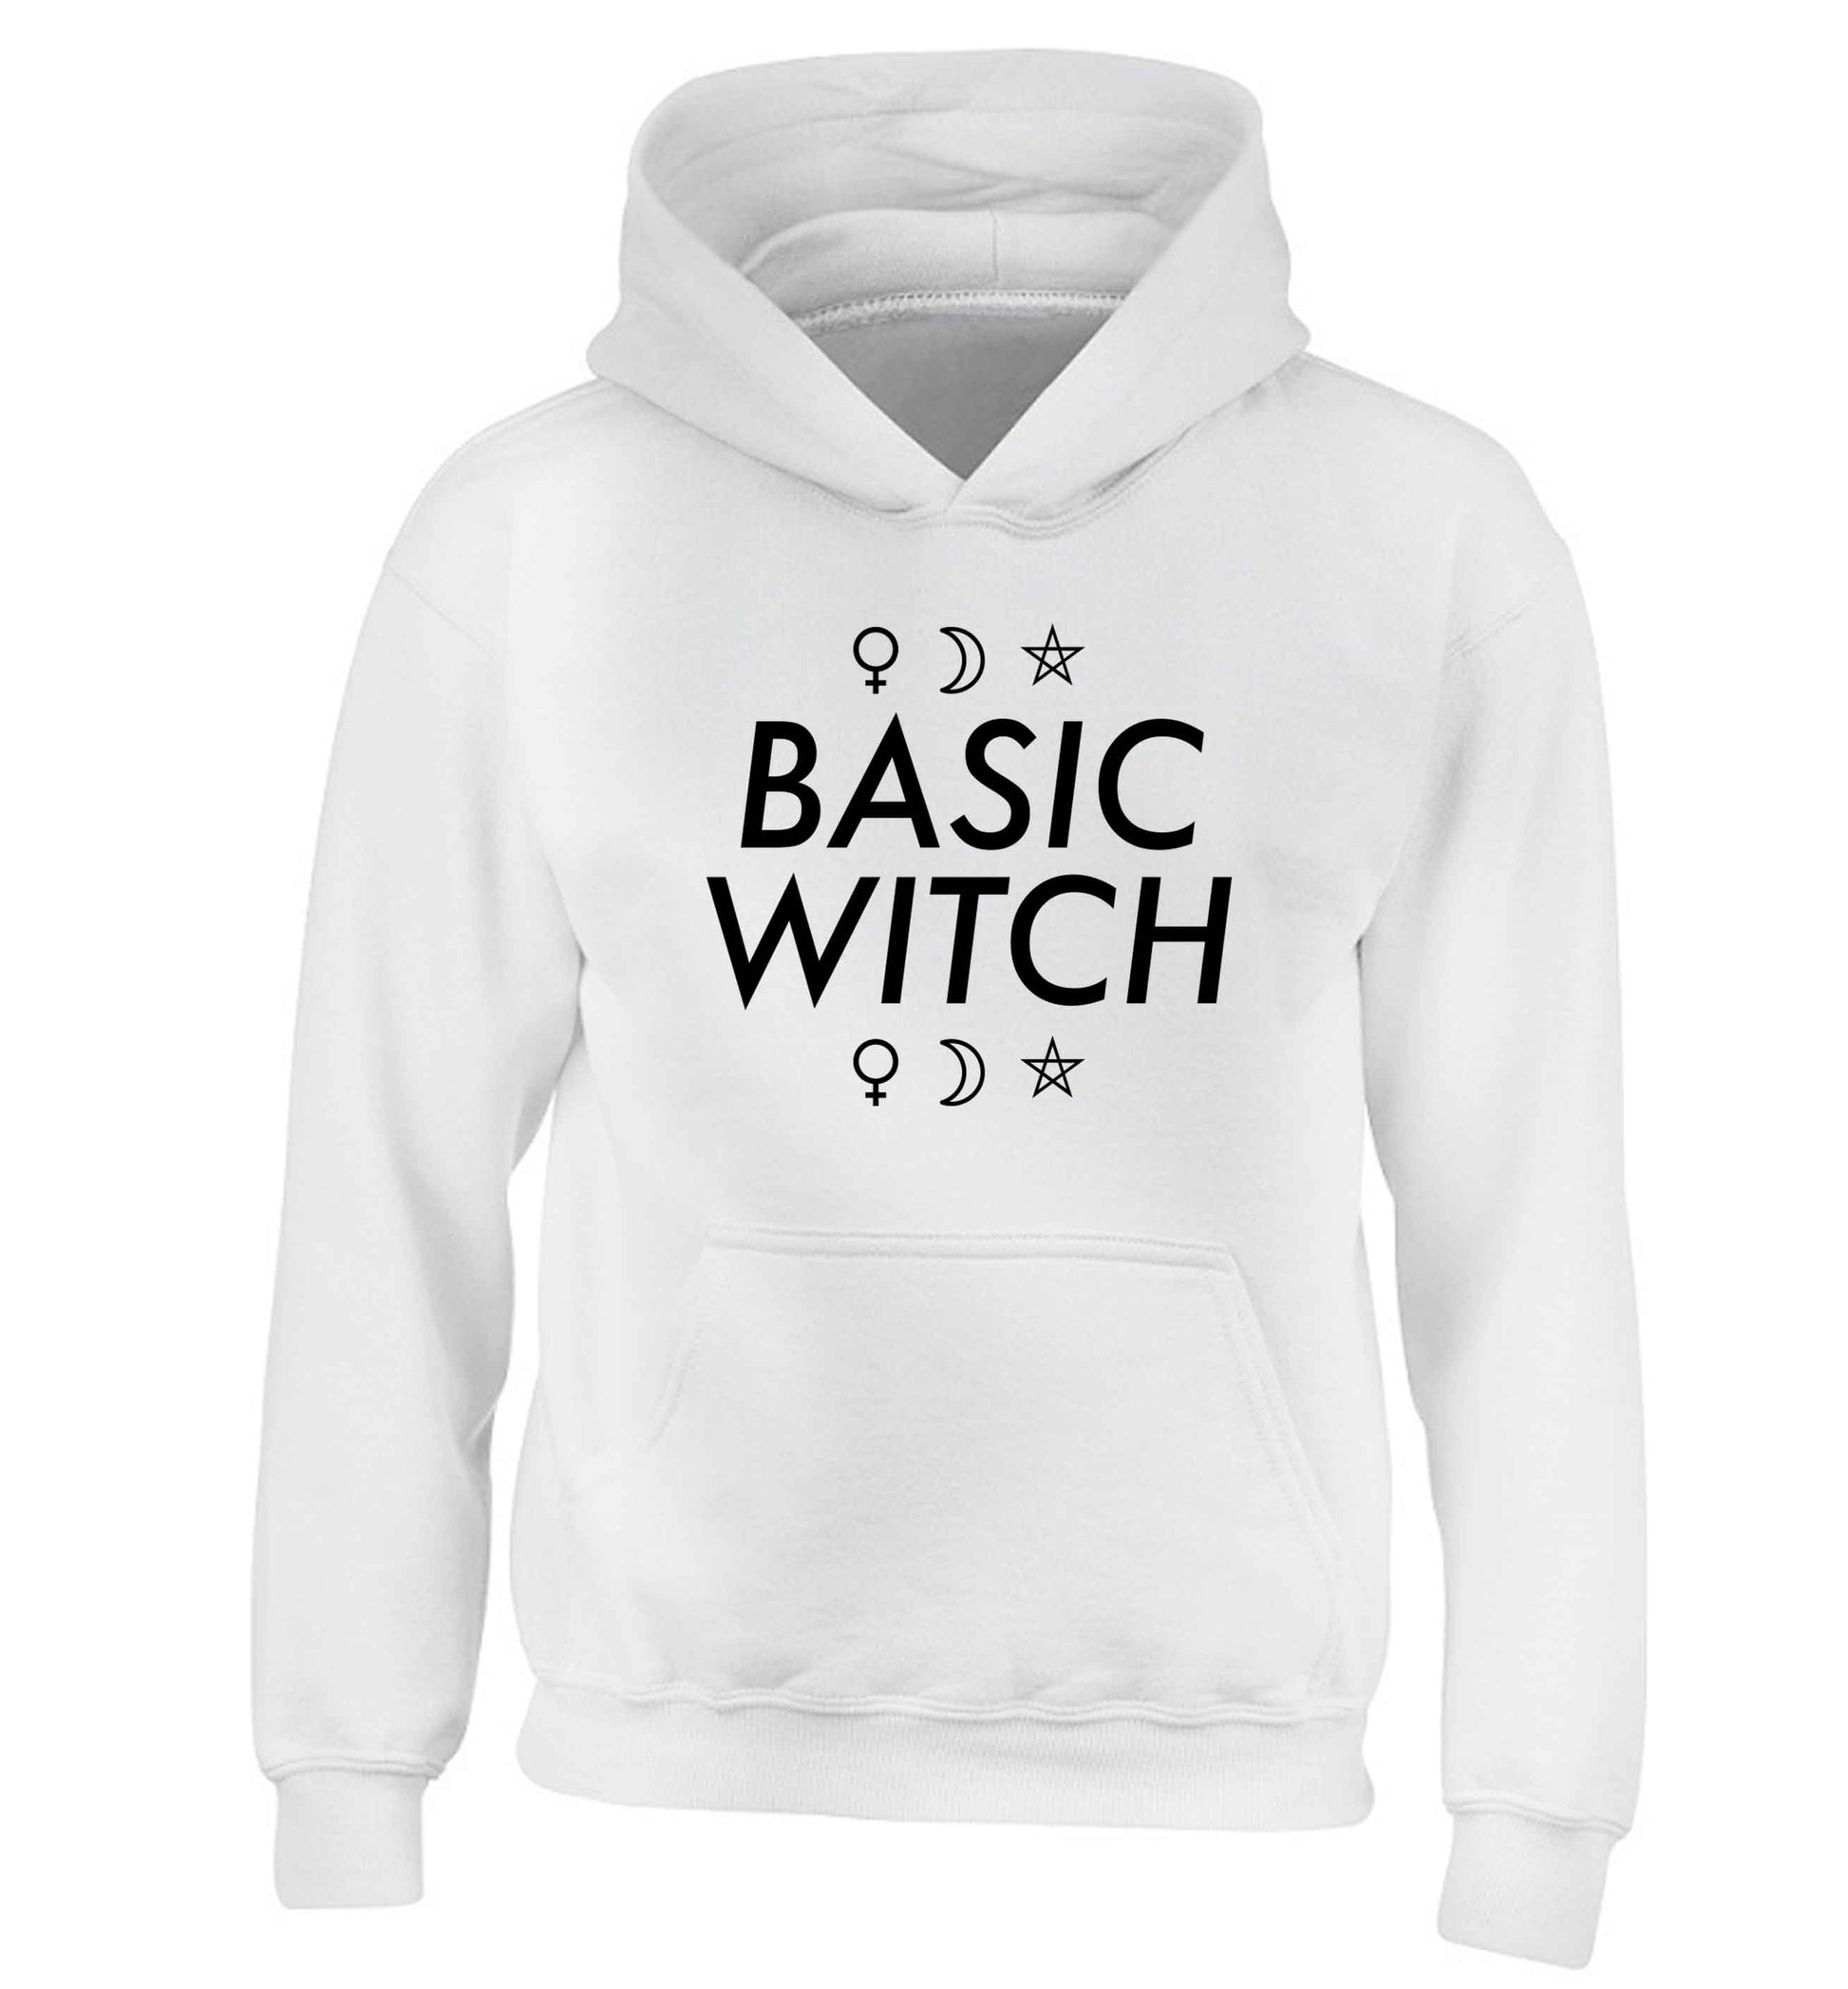 Basic witch 1 children's white hoodie 12-13 Years